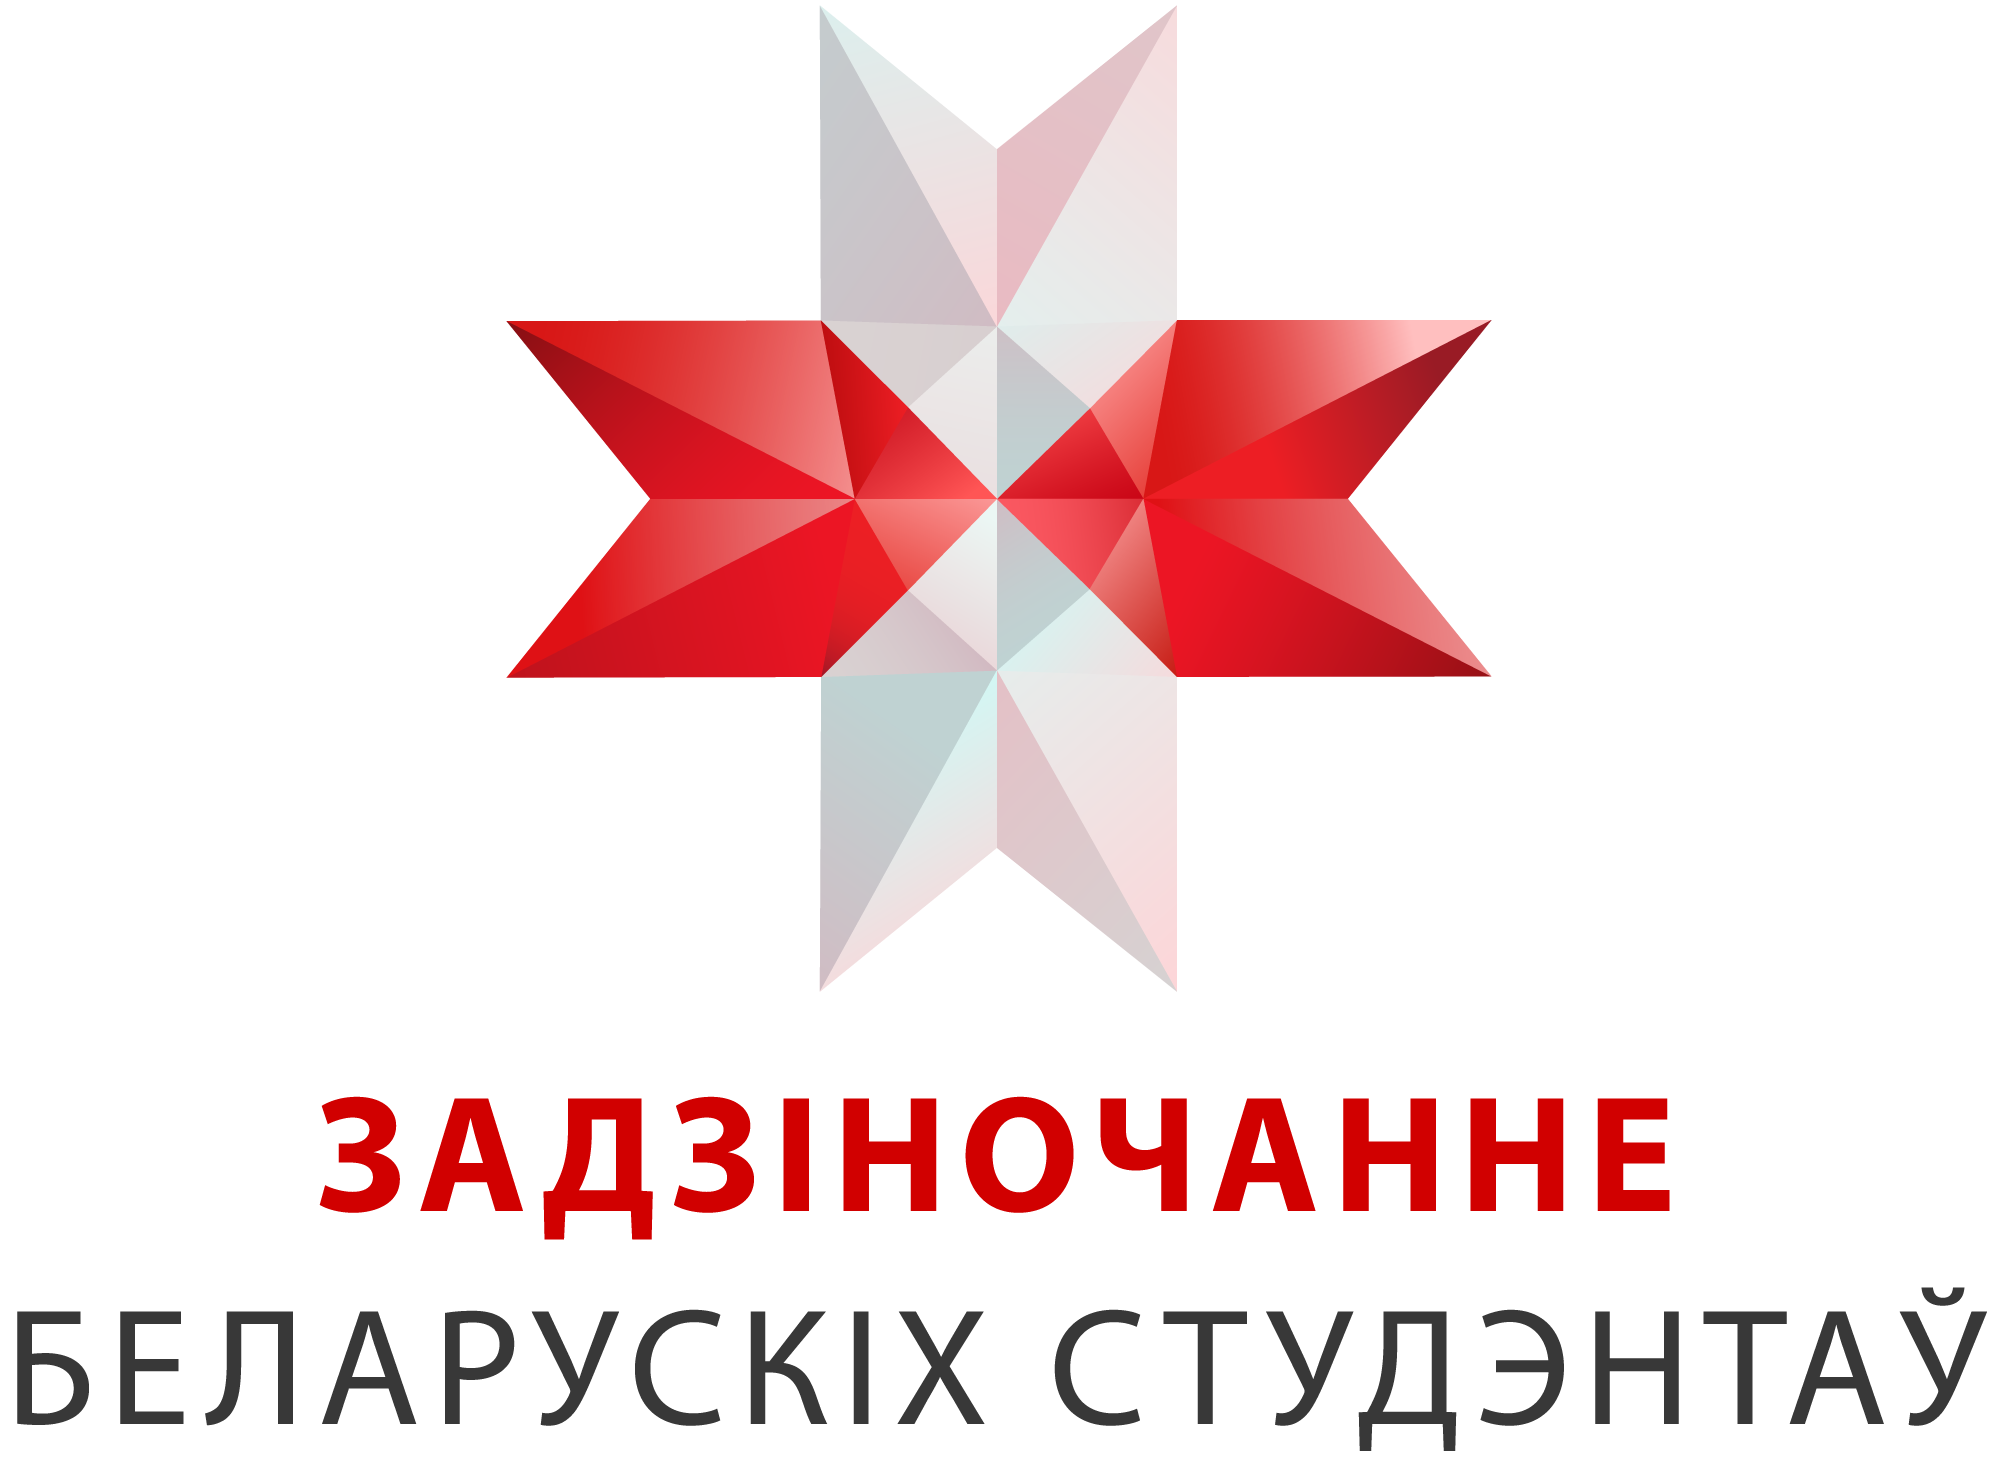 Belarus – BSA – Belarusian Students’ Association